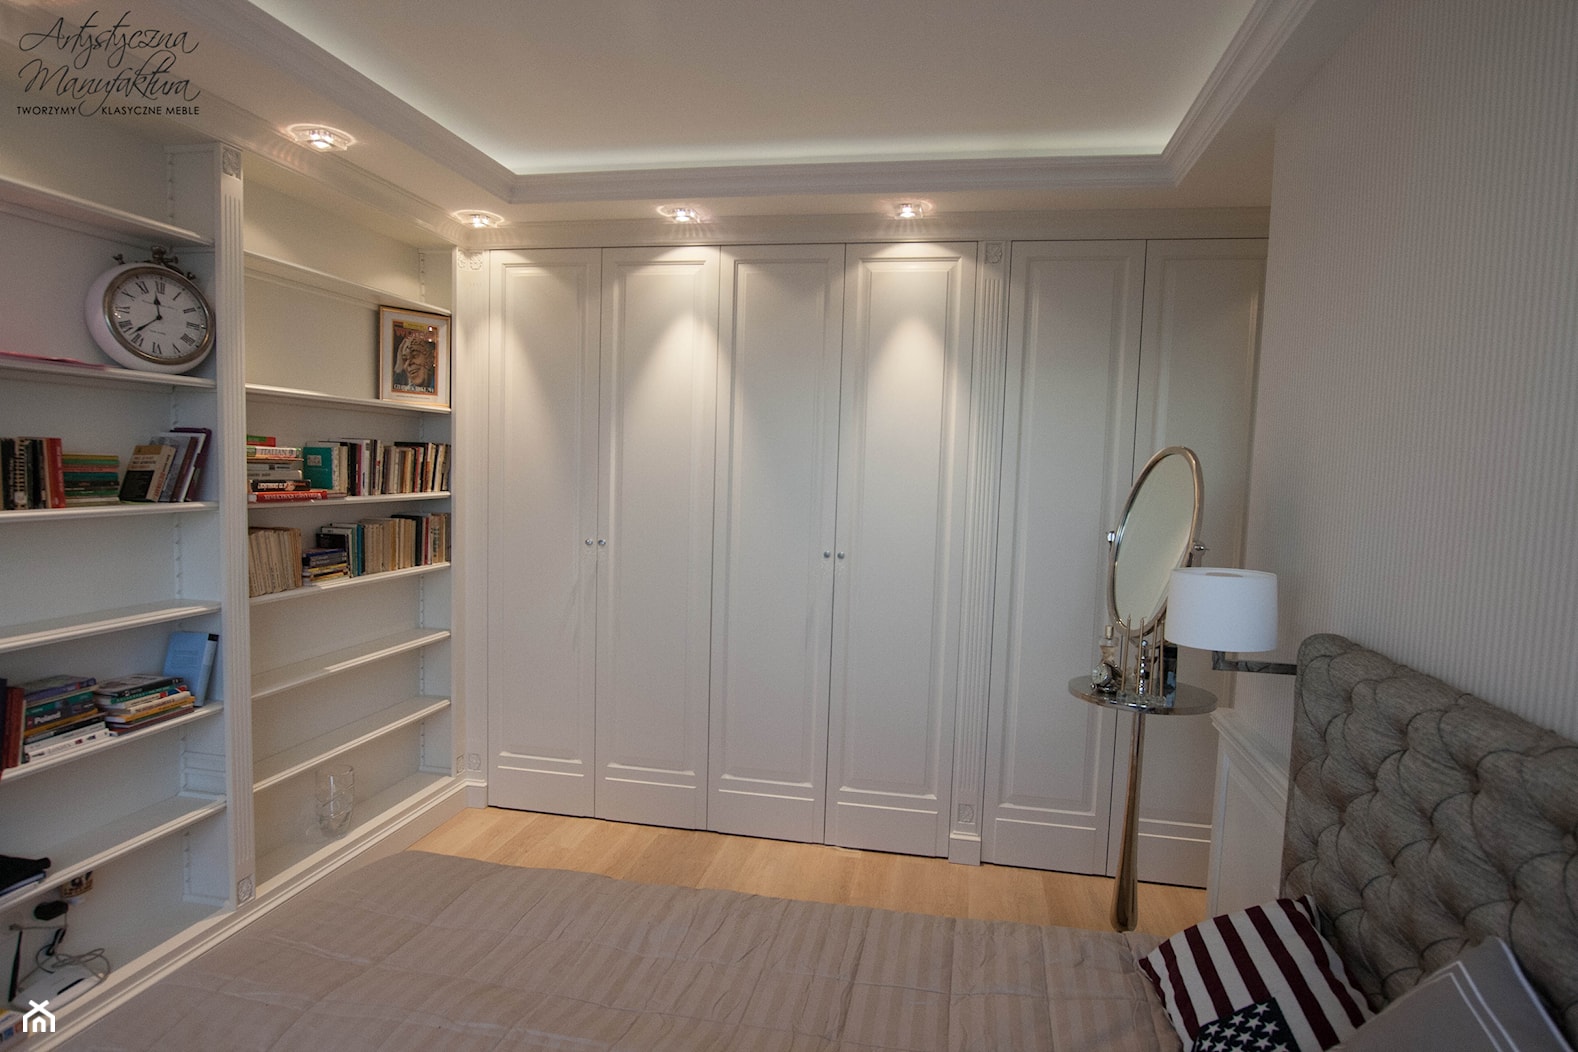 szafy oraz biblioteka w sypialni - zdjęcie od Artystyczna Manufaktura - klasyczne meble na wymiar - Homebook